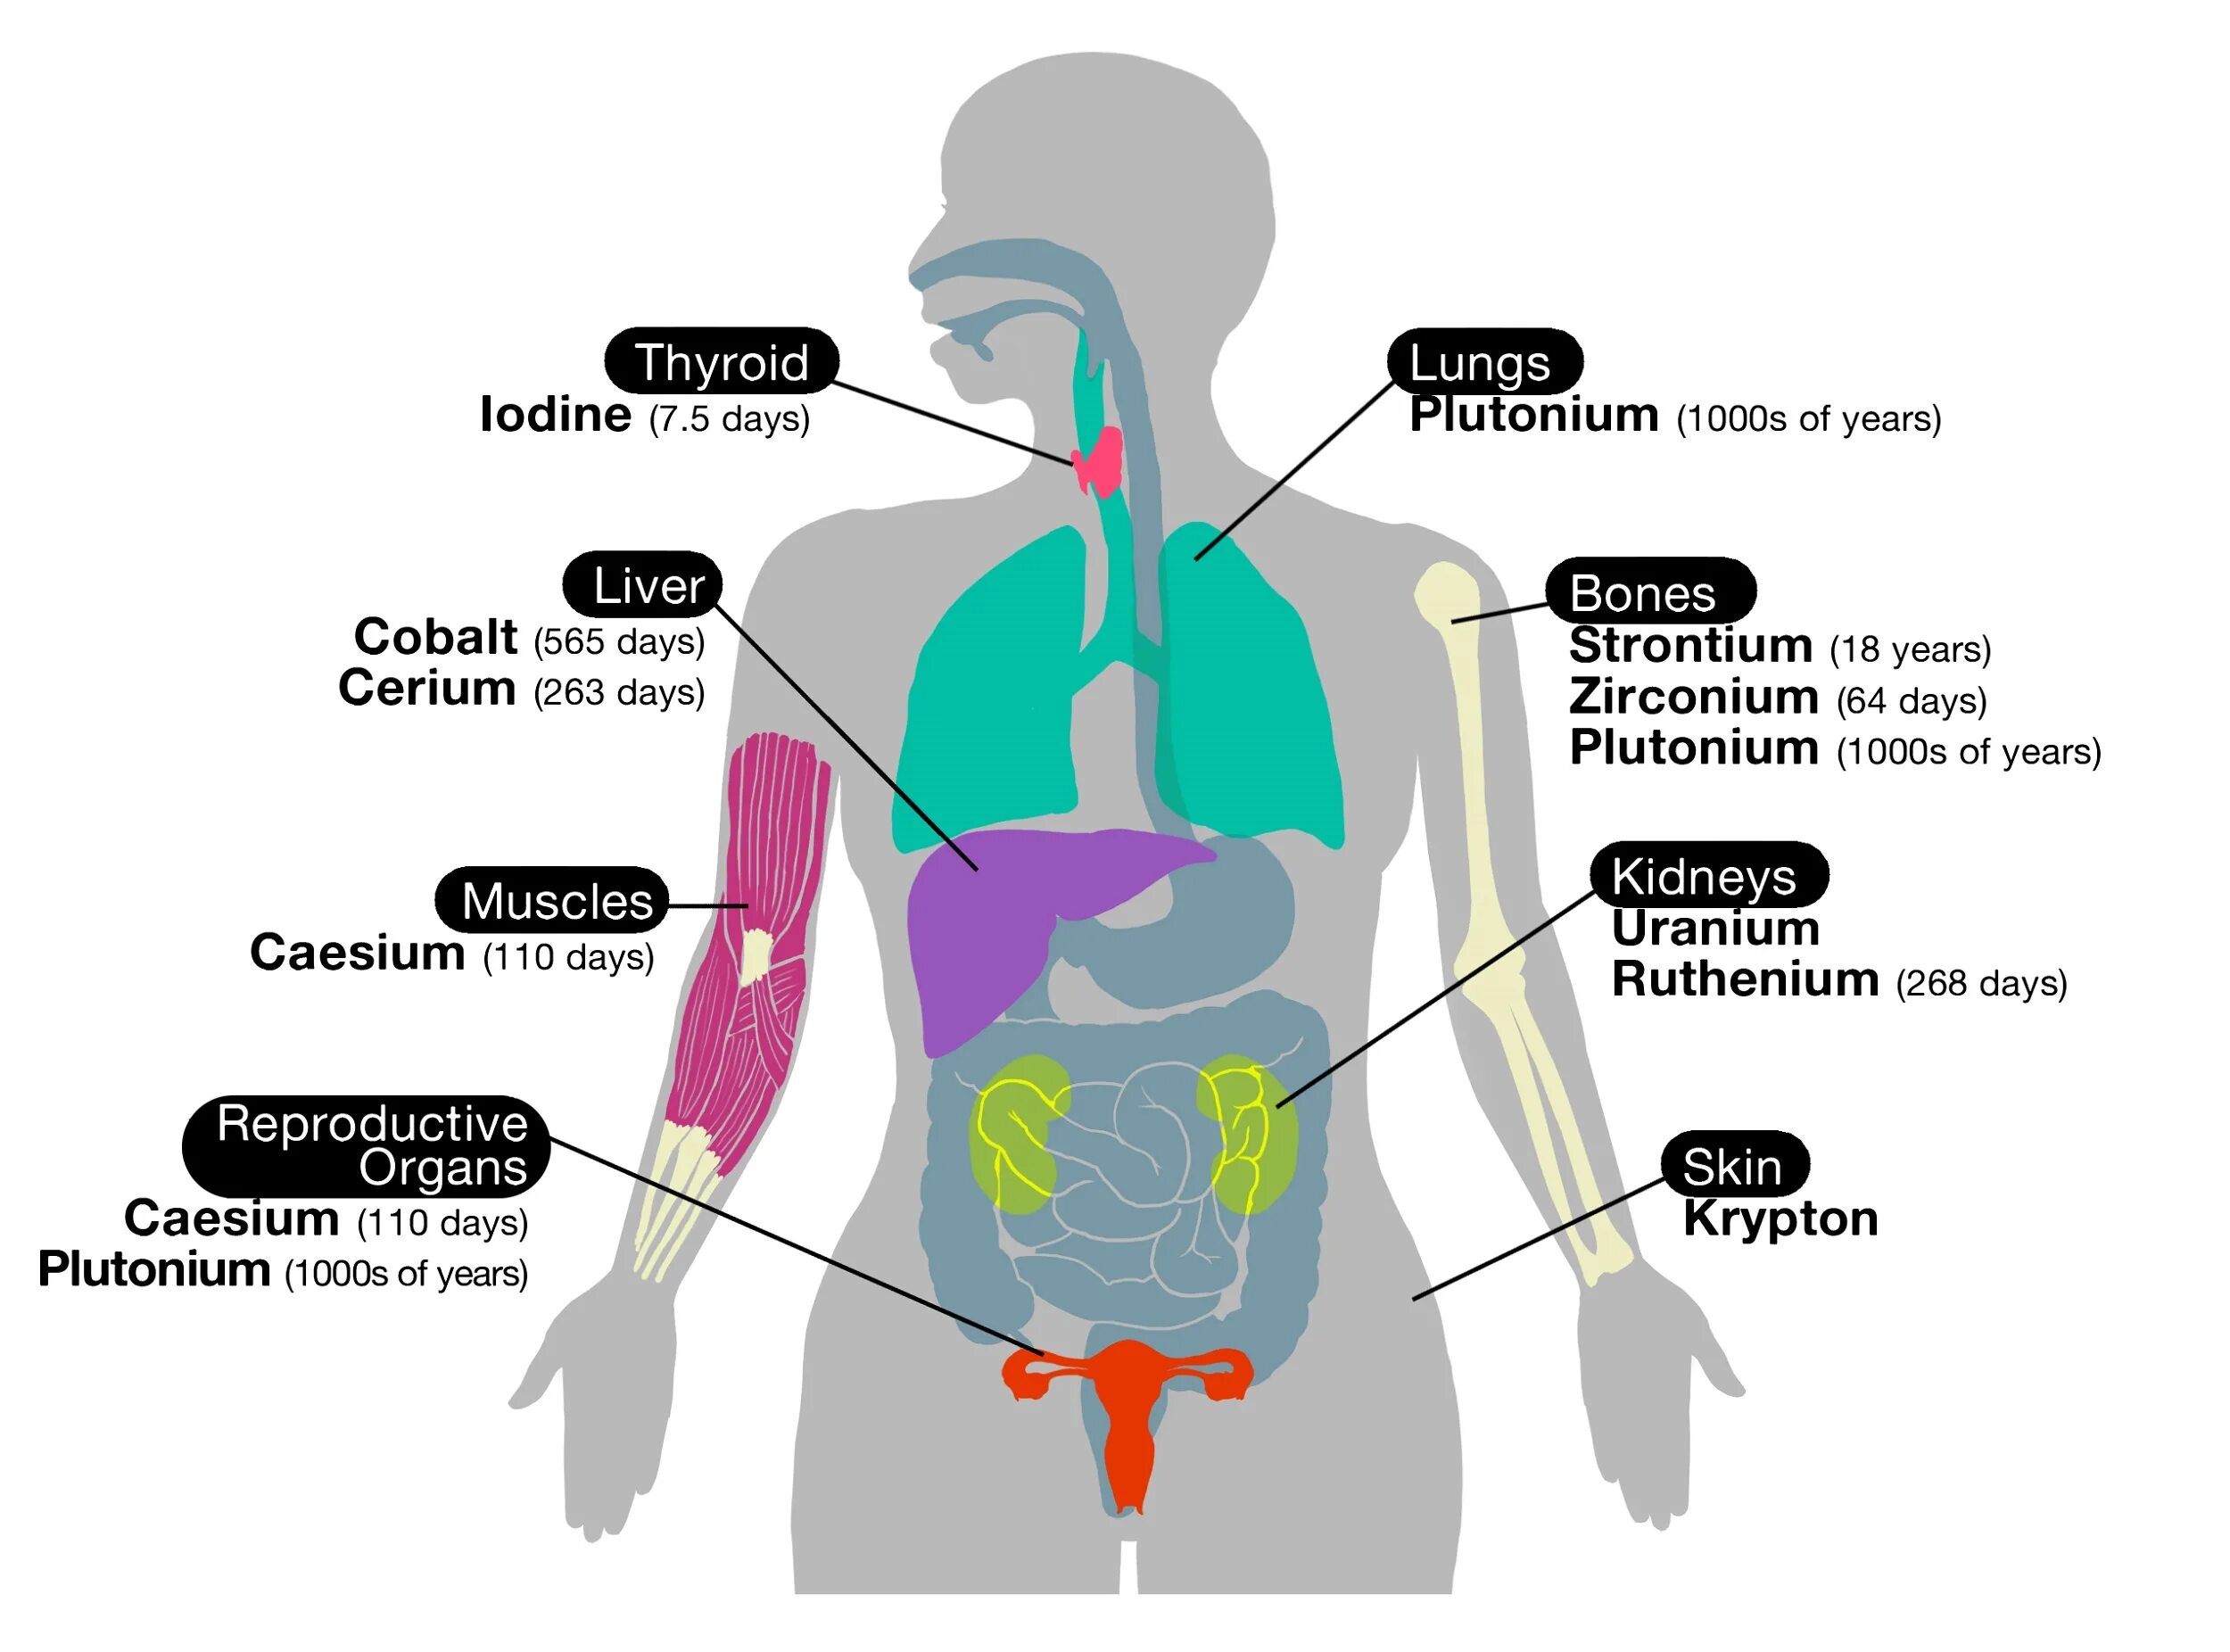 Human organs. Органы человека. Расположение органов у человека. Схема тела человека с органами. Диаграмма органов человека.